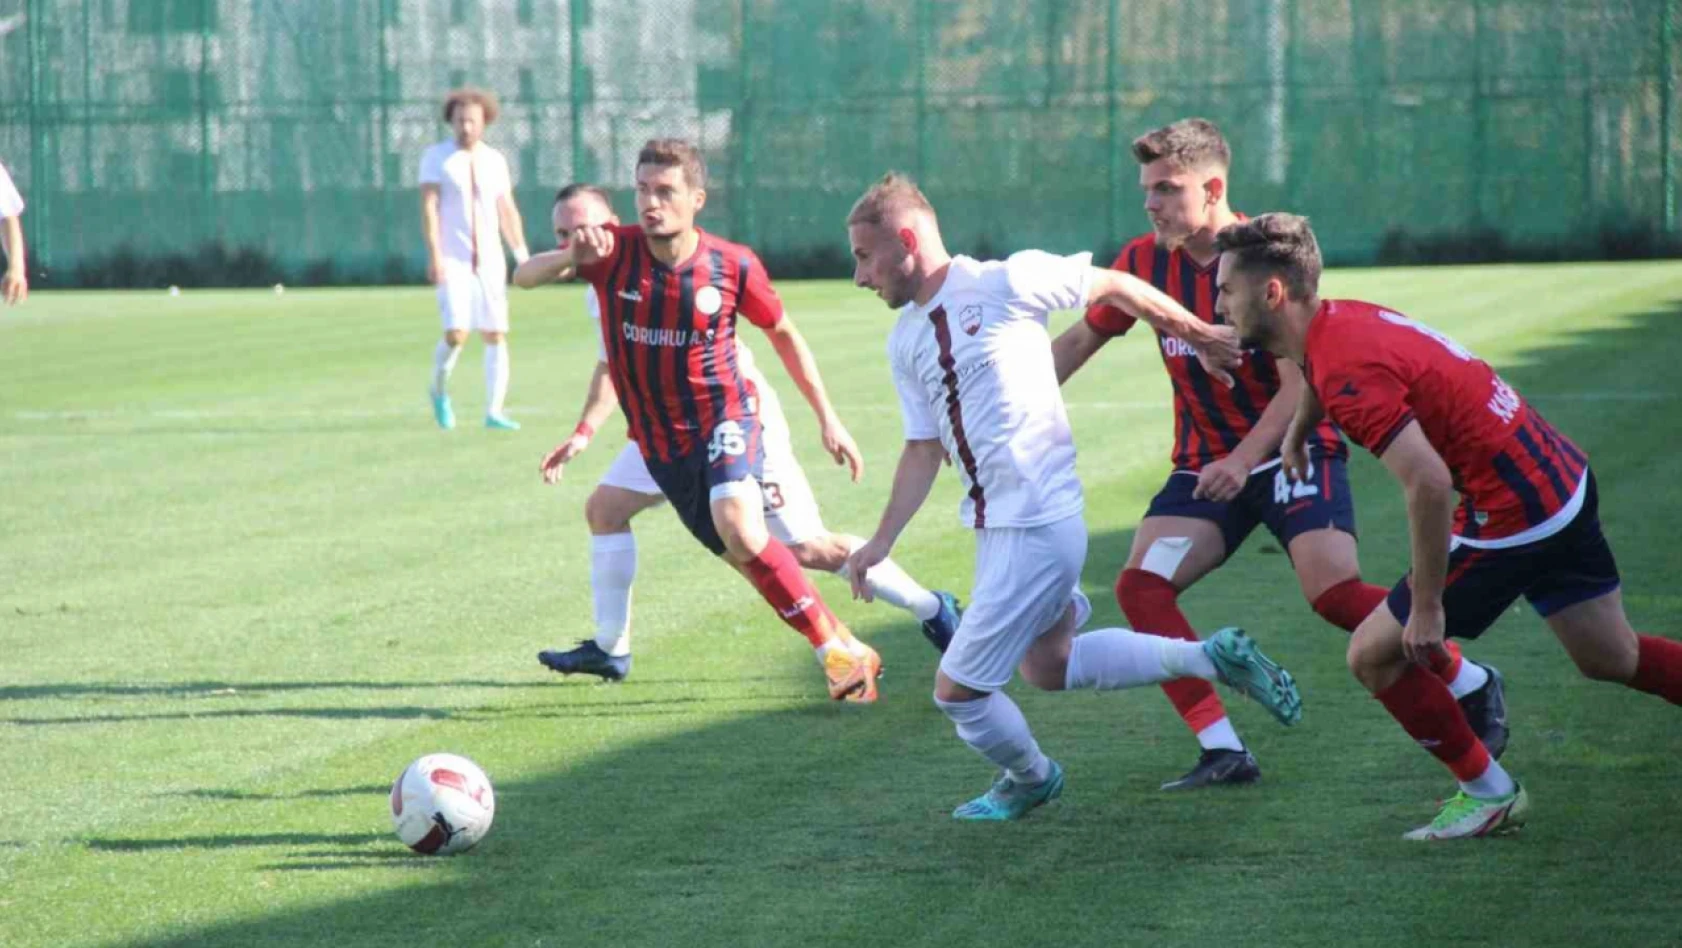 TFF 3. Lig: 23 Elazığ FK: 2 - Bergama Sportif Faaliyetler: 2